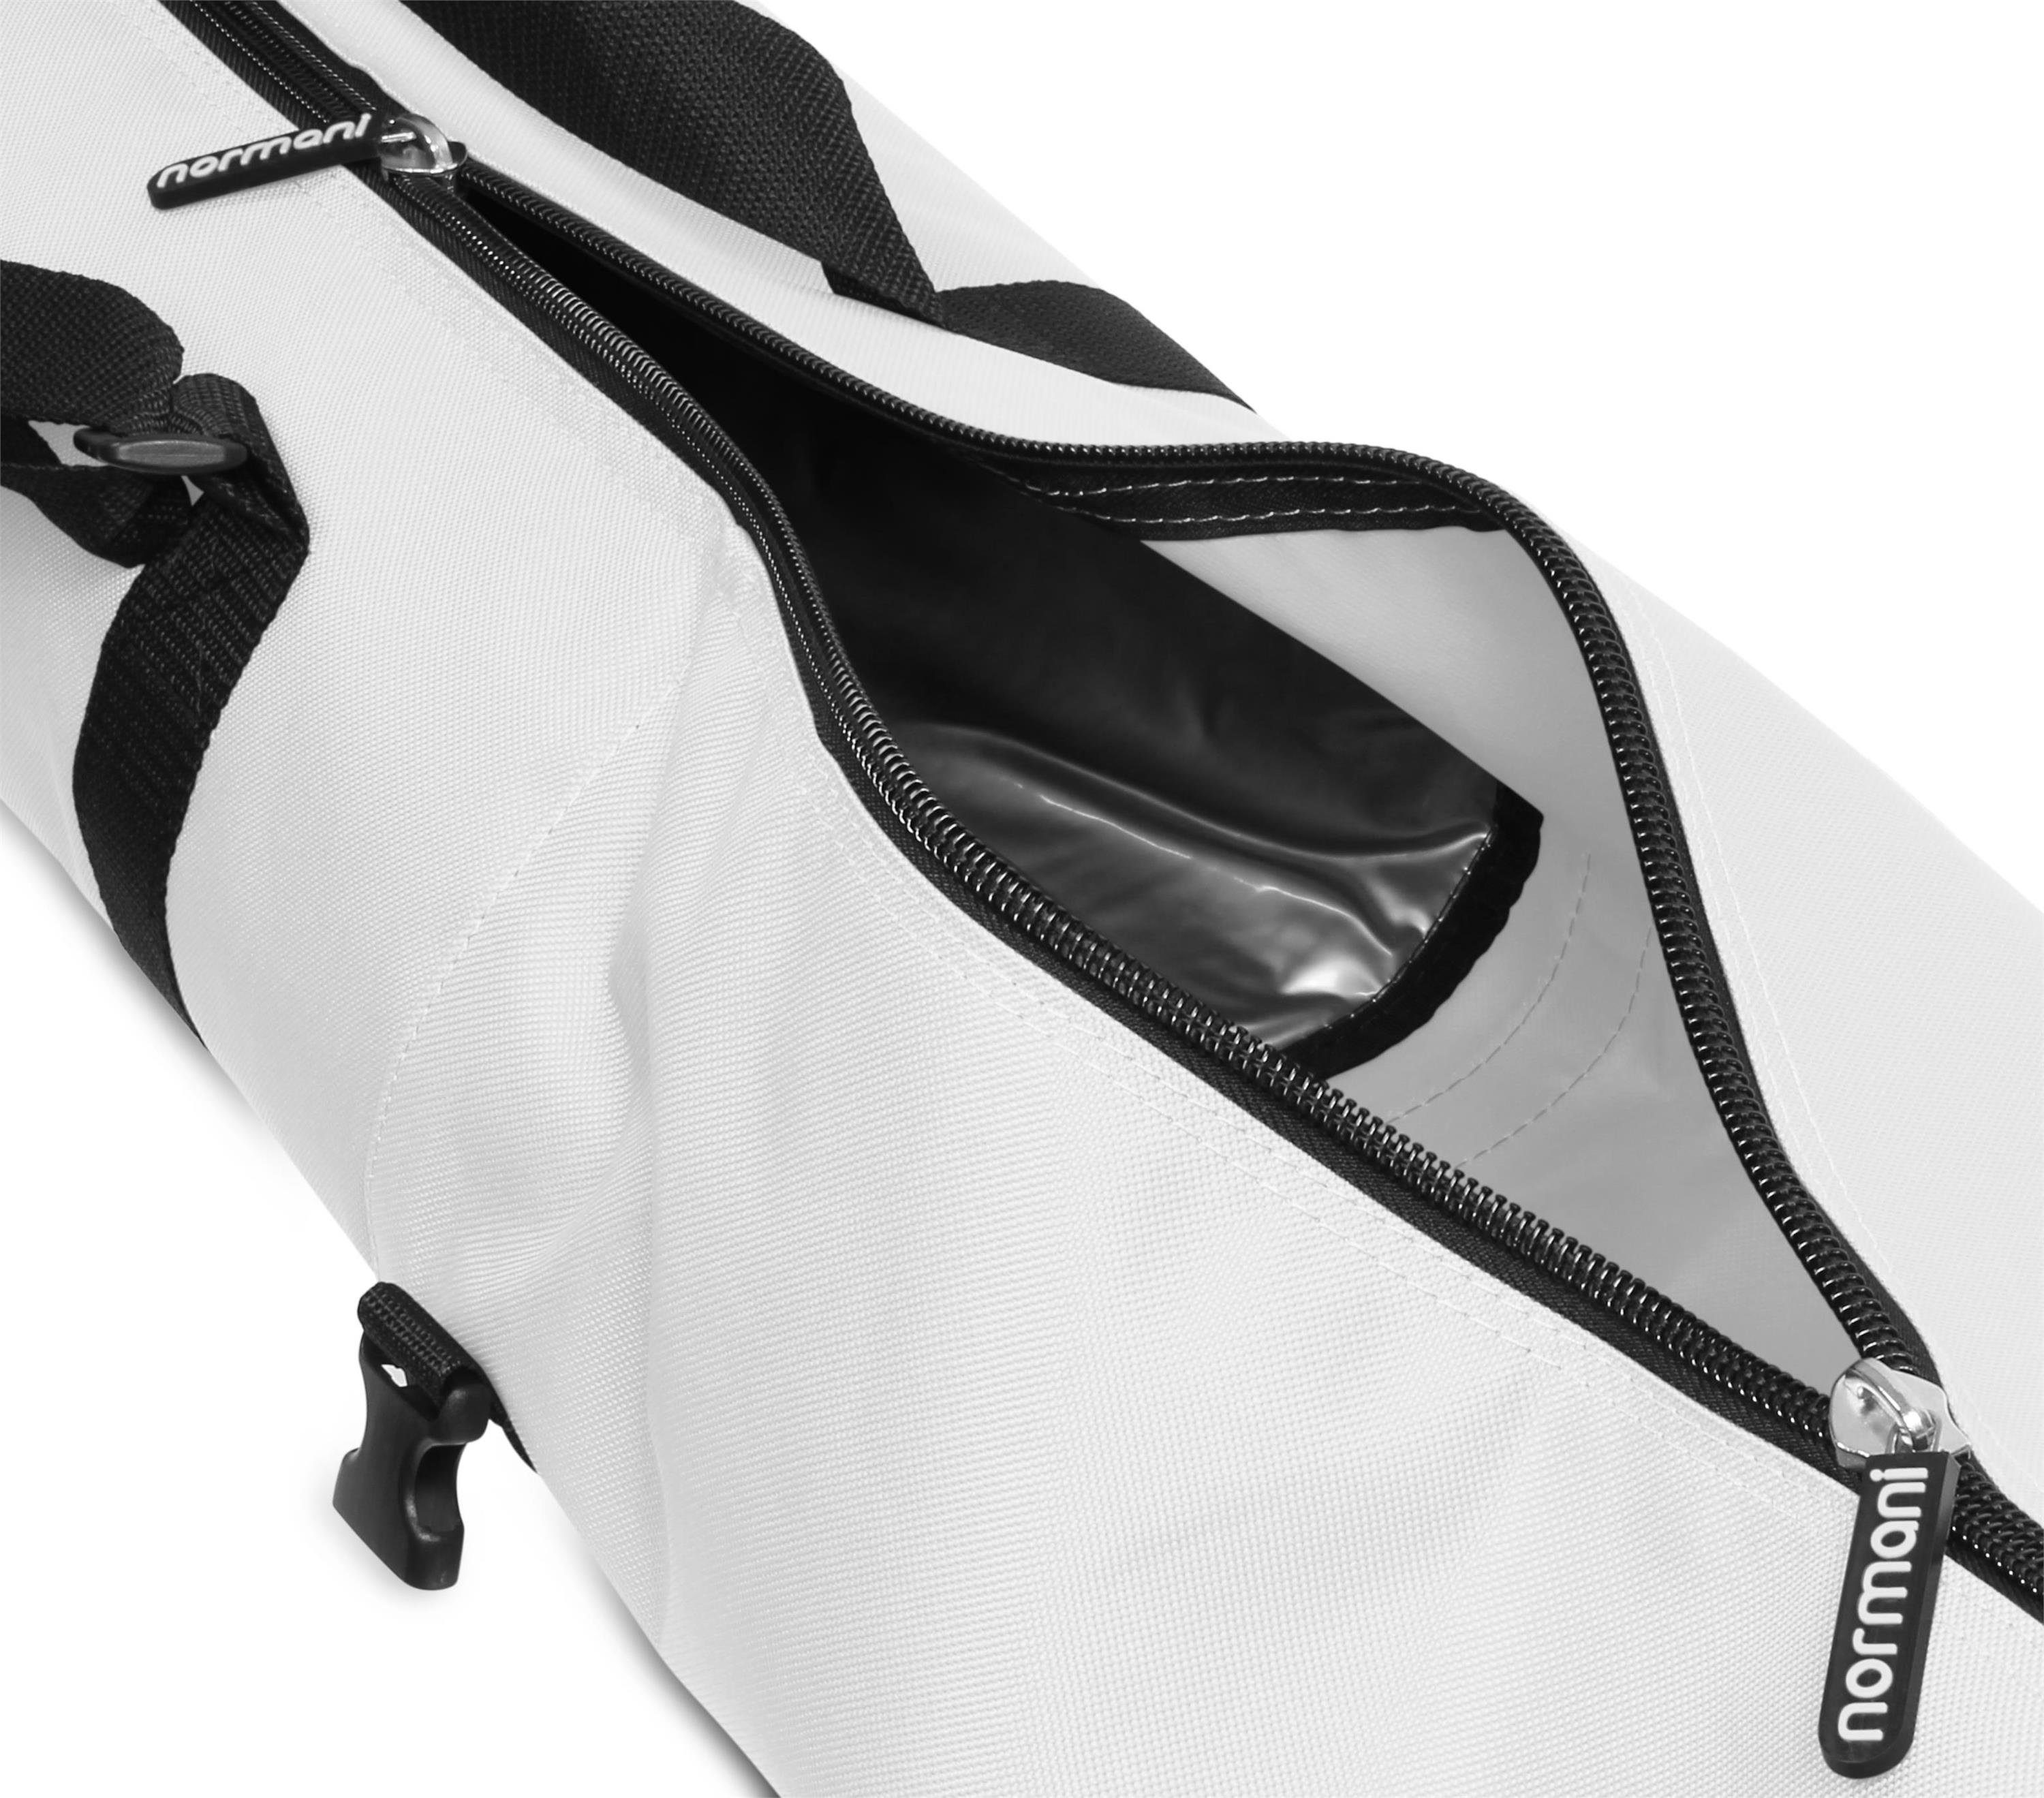 Skihülle Skier Transporttasche Skitasche normani Sporttasche 170, und Aufbewahrungstasche für Run Weiß Alpine Skitasche Skistöcke